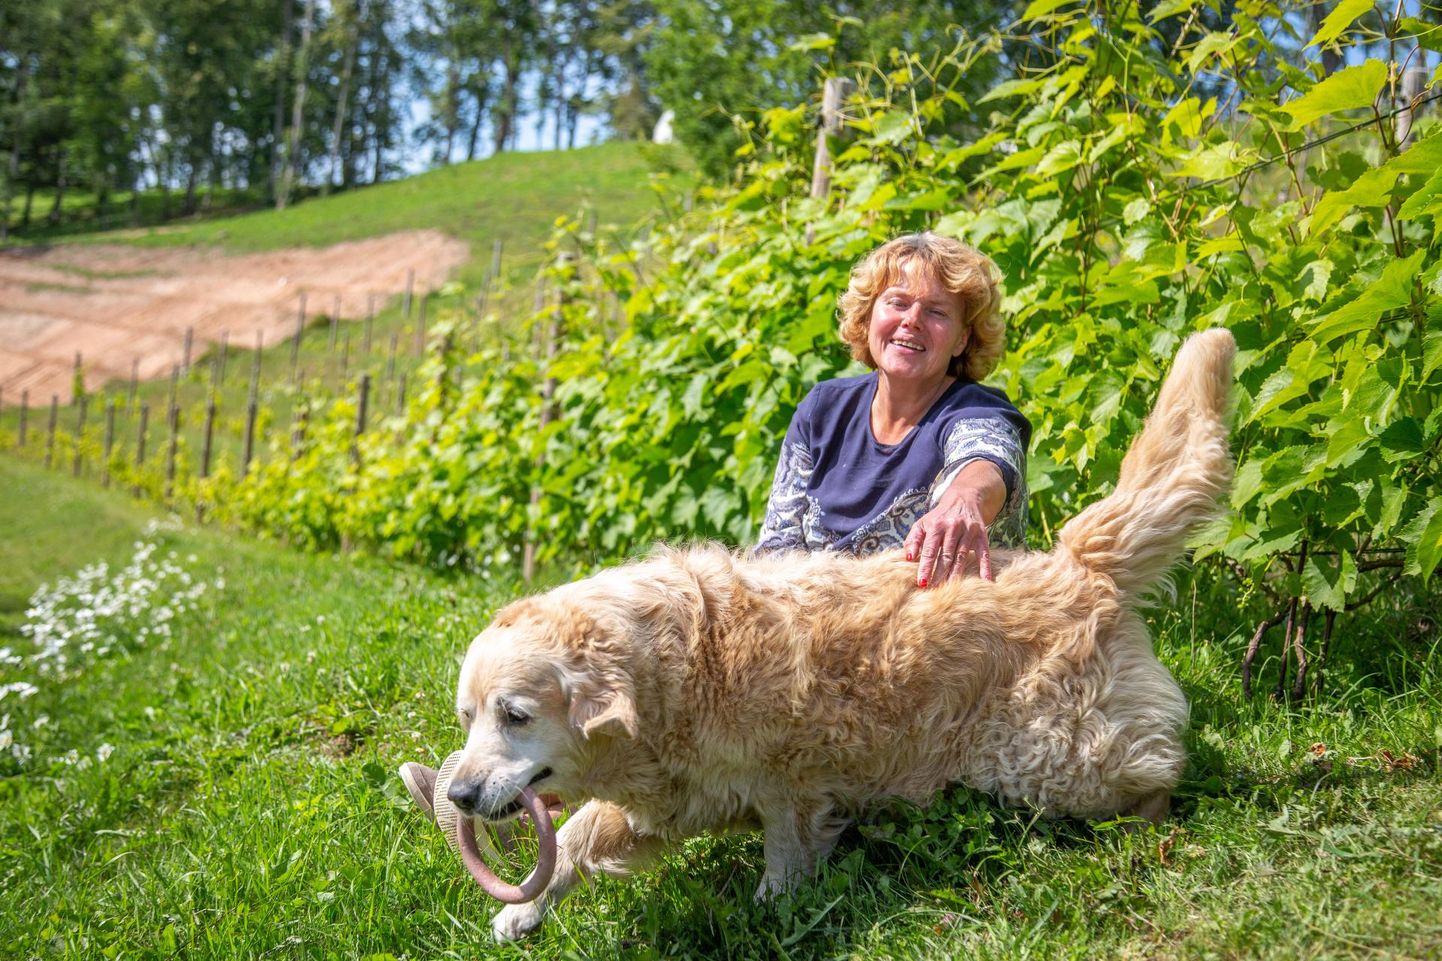 Keset viinamarjaistandust jalga puhkavad perenaine Janika Ilves ja Muri on suured sõbrad. Murimäe veinikelder sai alguse ja nime just koerast, mistõttu on tal majapidamises tähtis roll kanda.